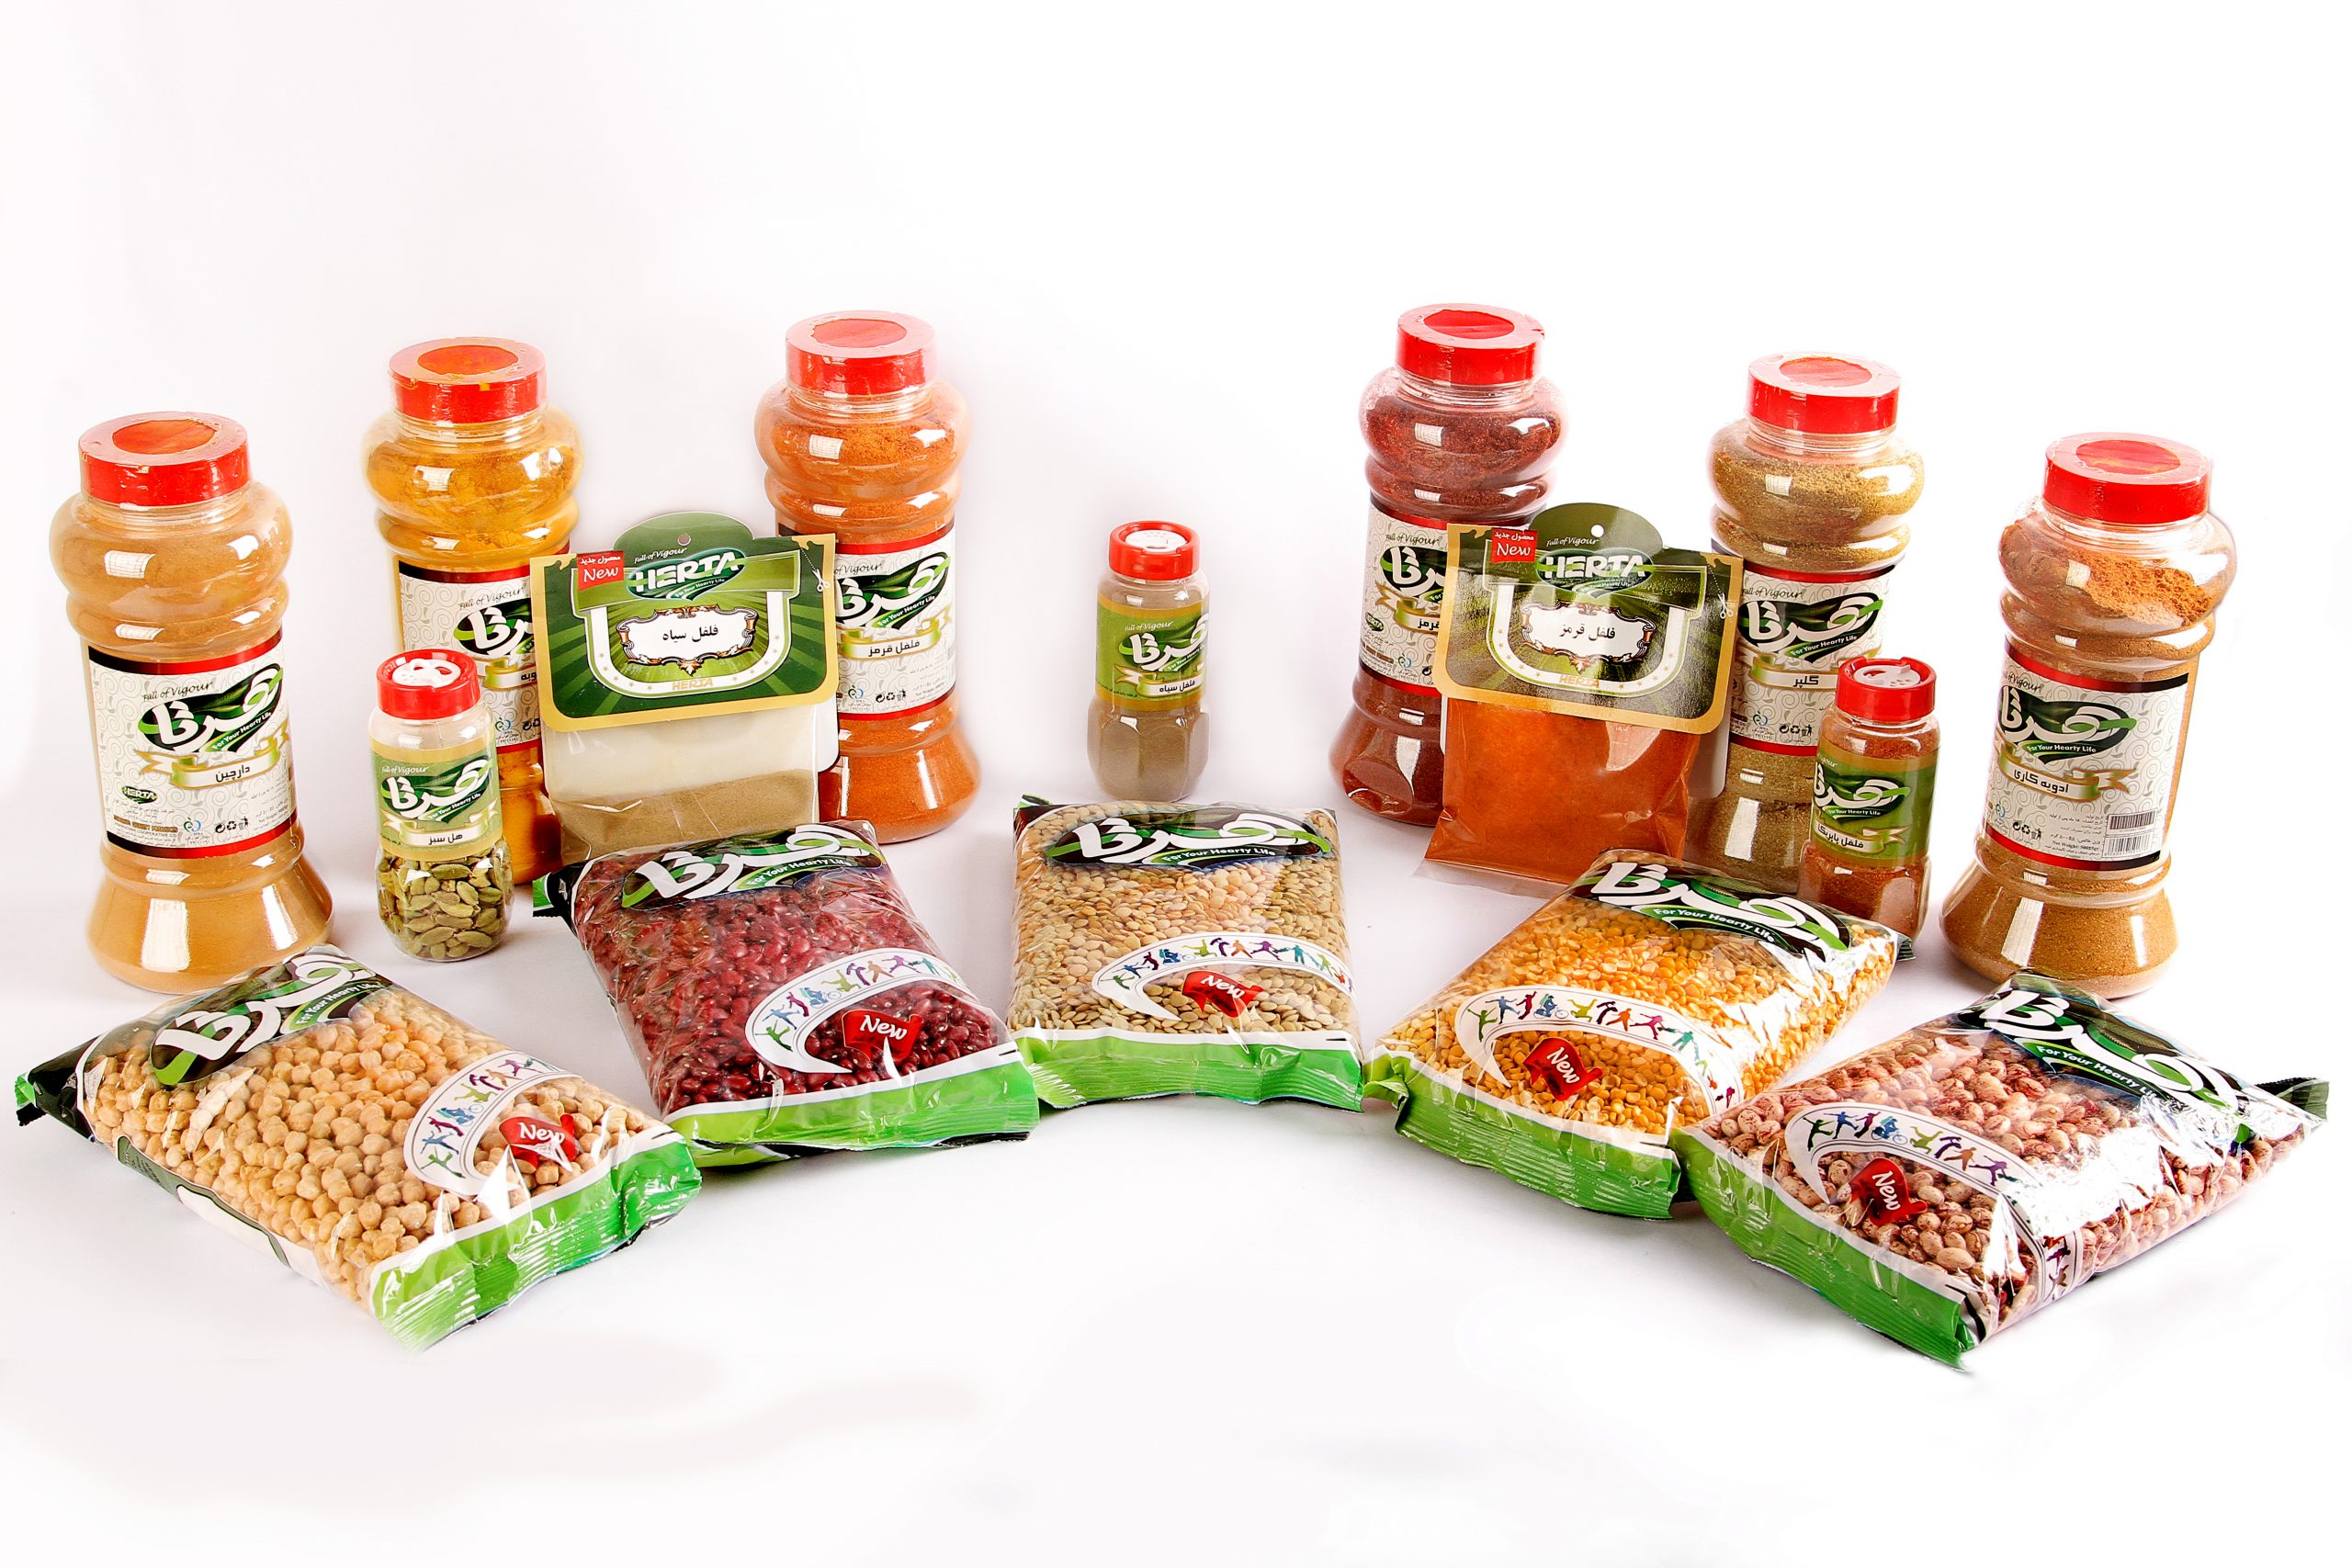 لیست قیمت محصولات غذایی هرتا